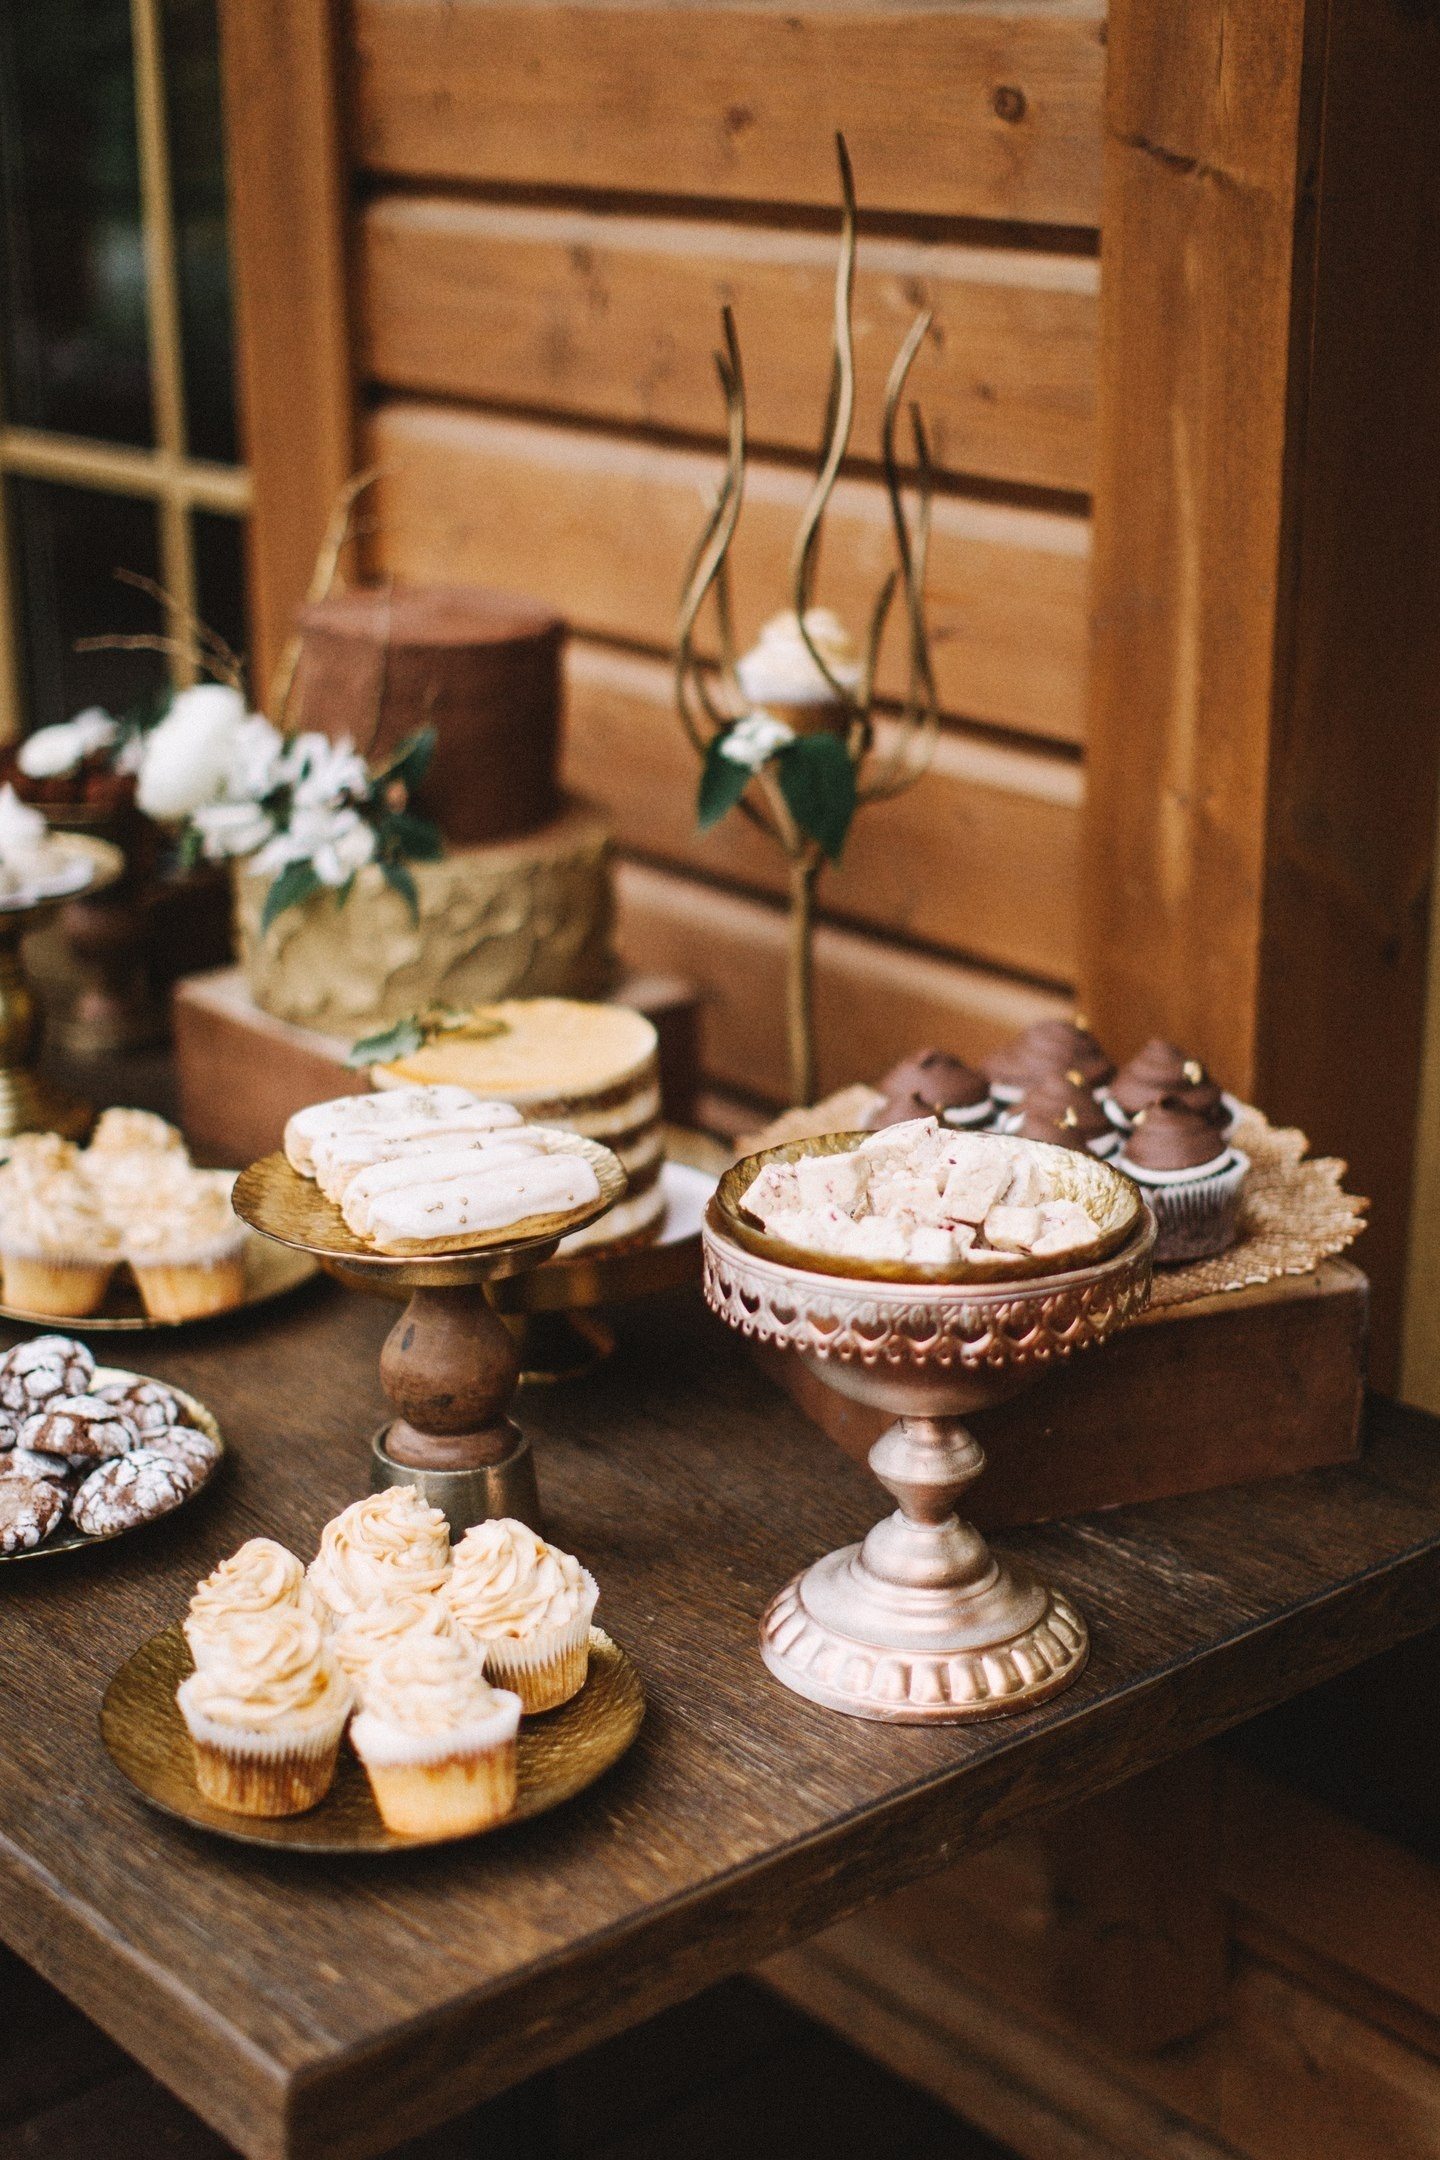 Brokede barer med chokolade, trøfler, marmoragtige desserter, dekoreret med kaffebønner og openwork-kager med glasur i bryllupsstil, ser godt ud i selskab med alderen kasser og udsmykkede stande